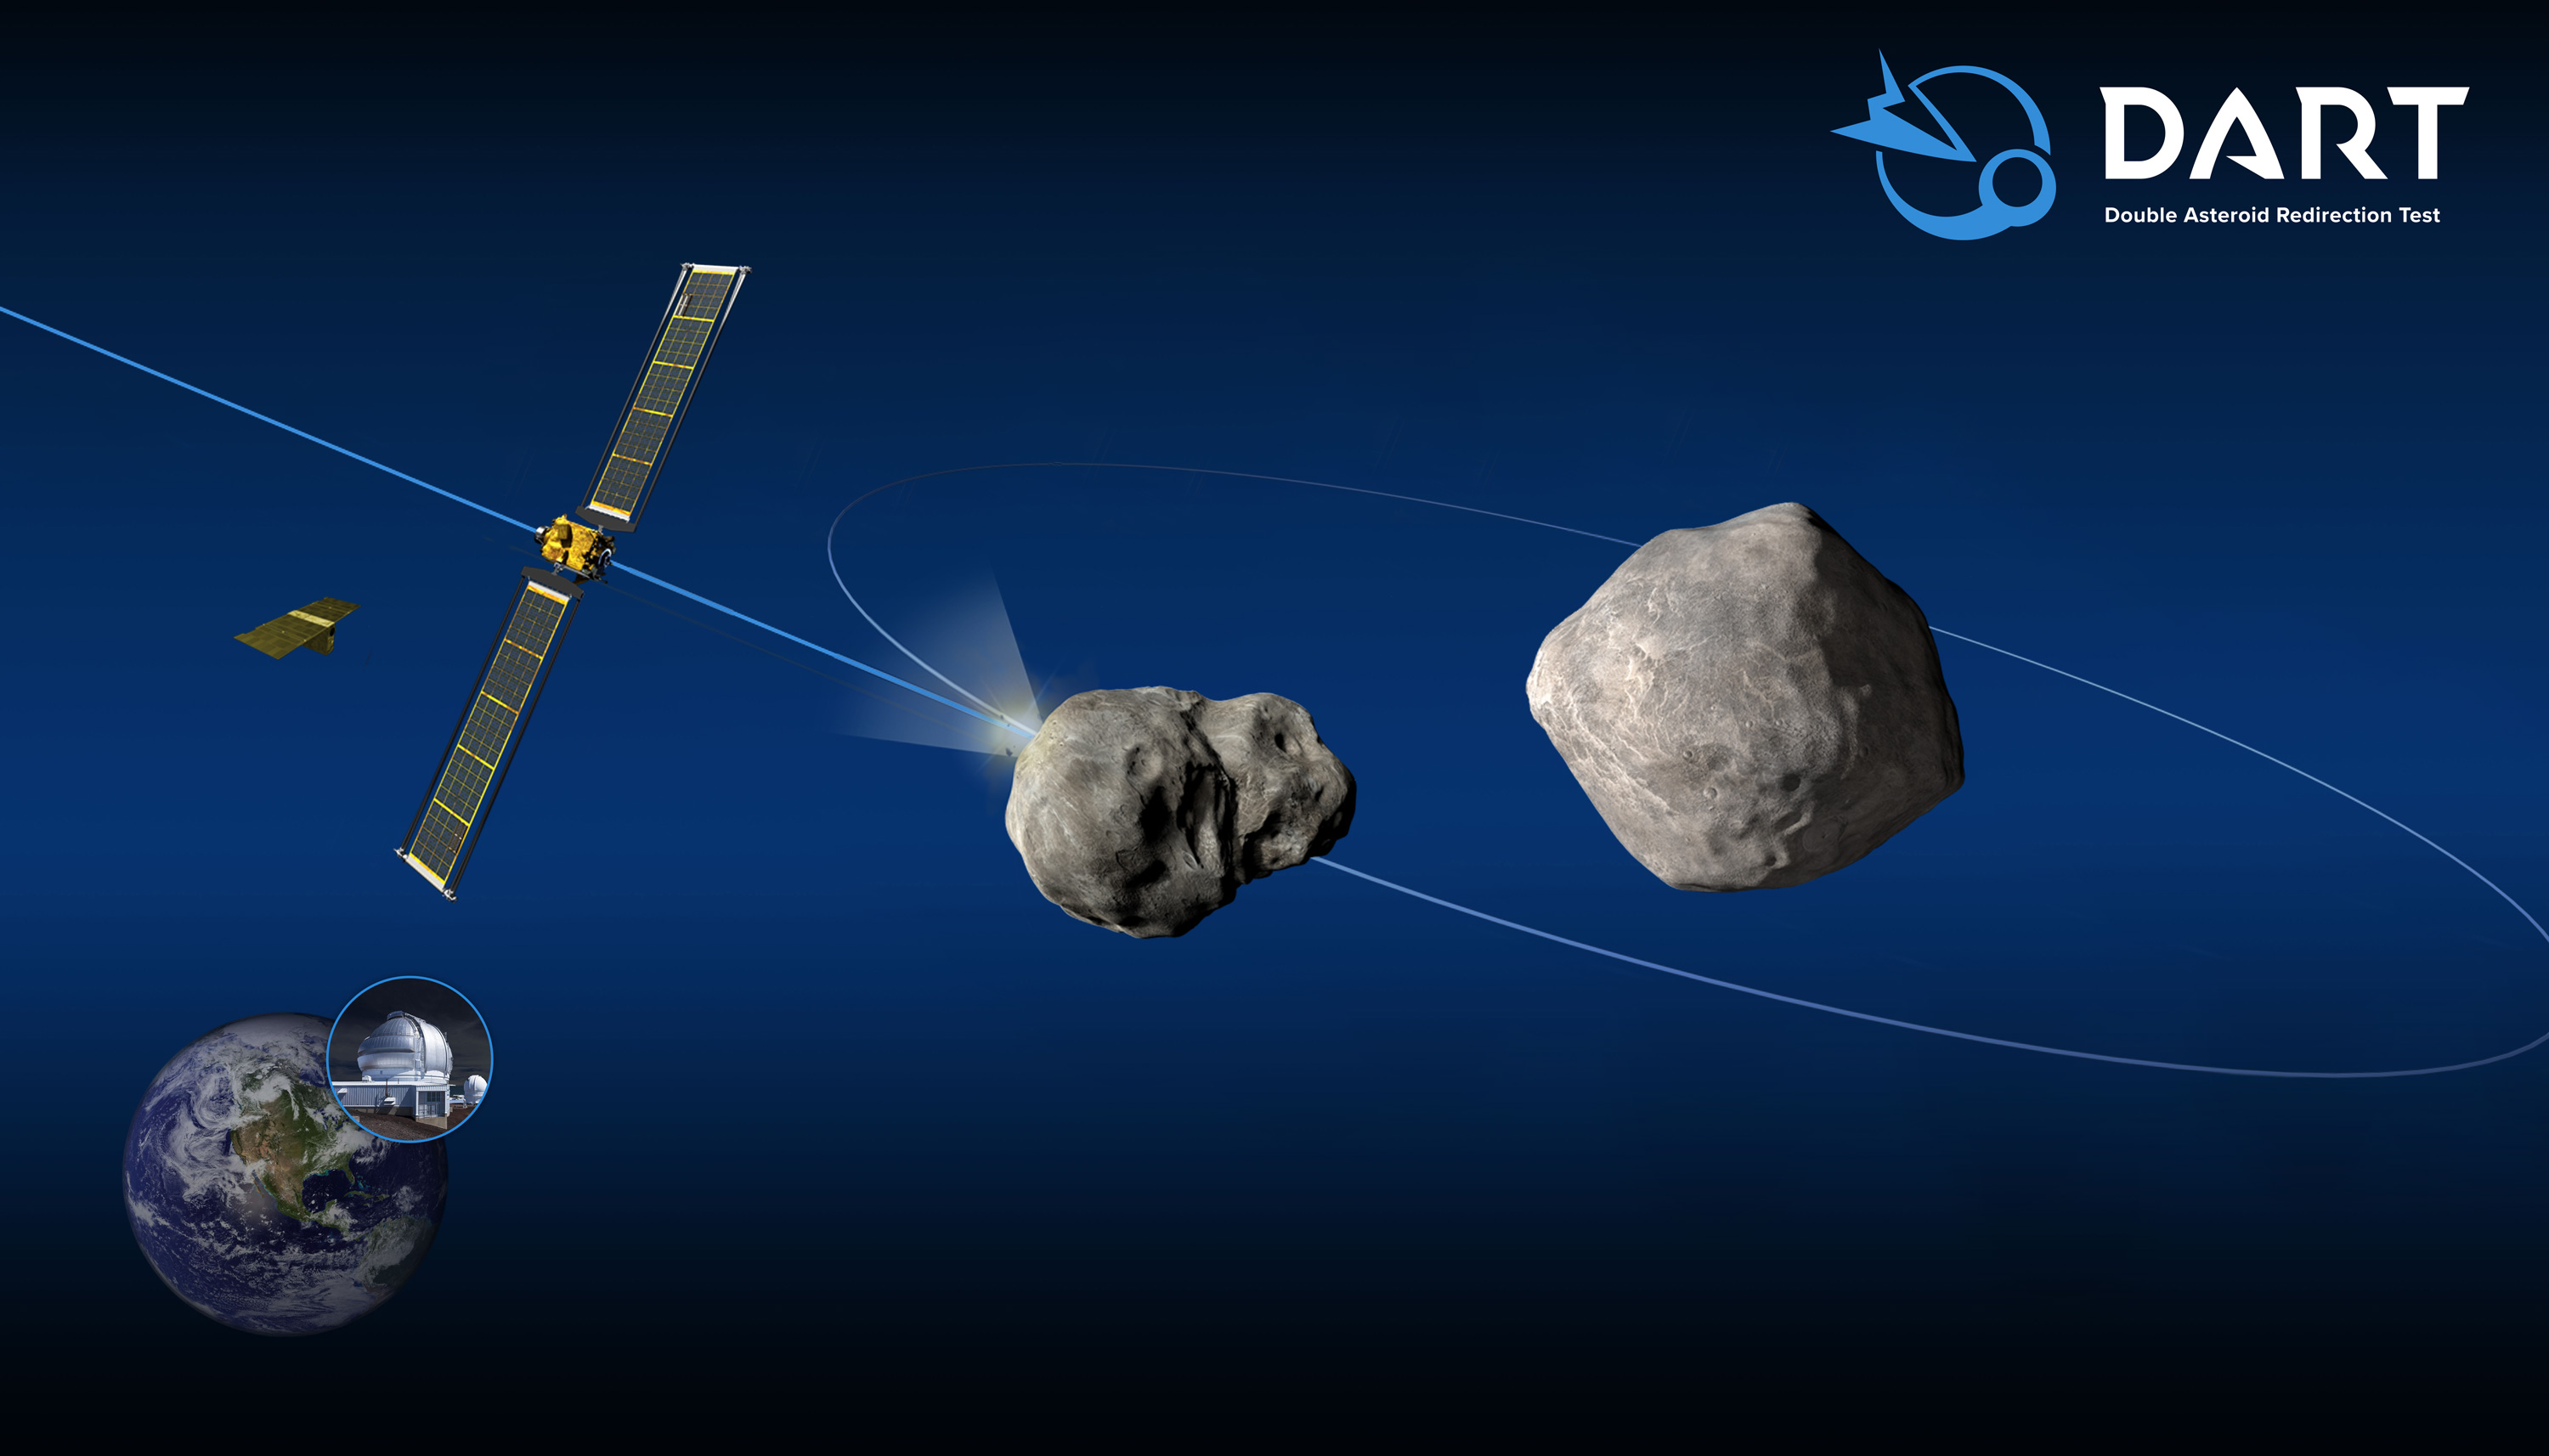 NASA z powodzeniem przetestowała pierwszy w historii system obrony planetarnej - sonda kamikaze DART zaatakowała asteroidę z prędkością 22 530 km/h